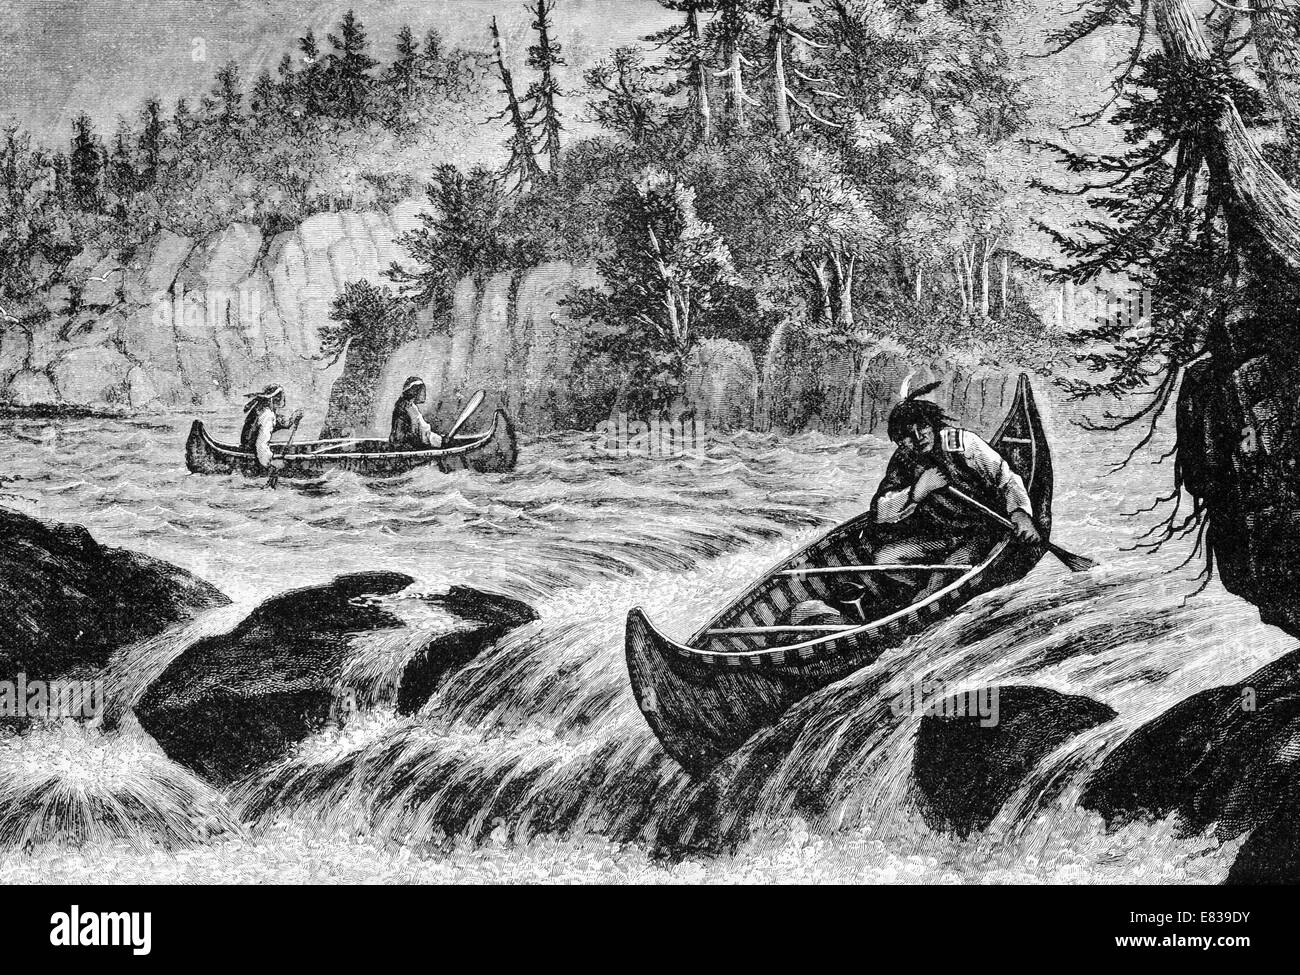 La peau des Indiens de l'Amérique du Nord tir Canoe River rapids vers 1885 Banque D'Images